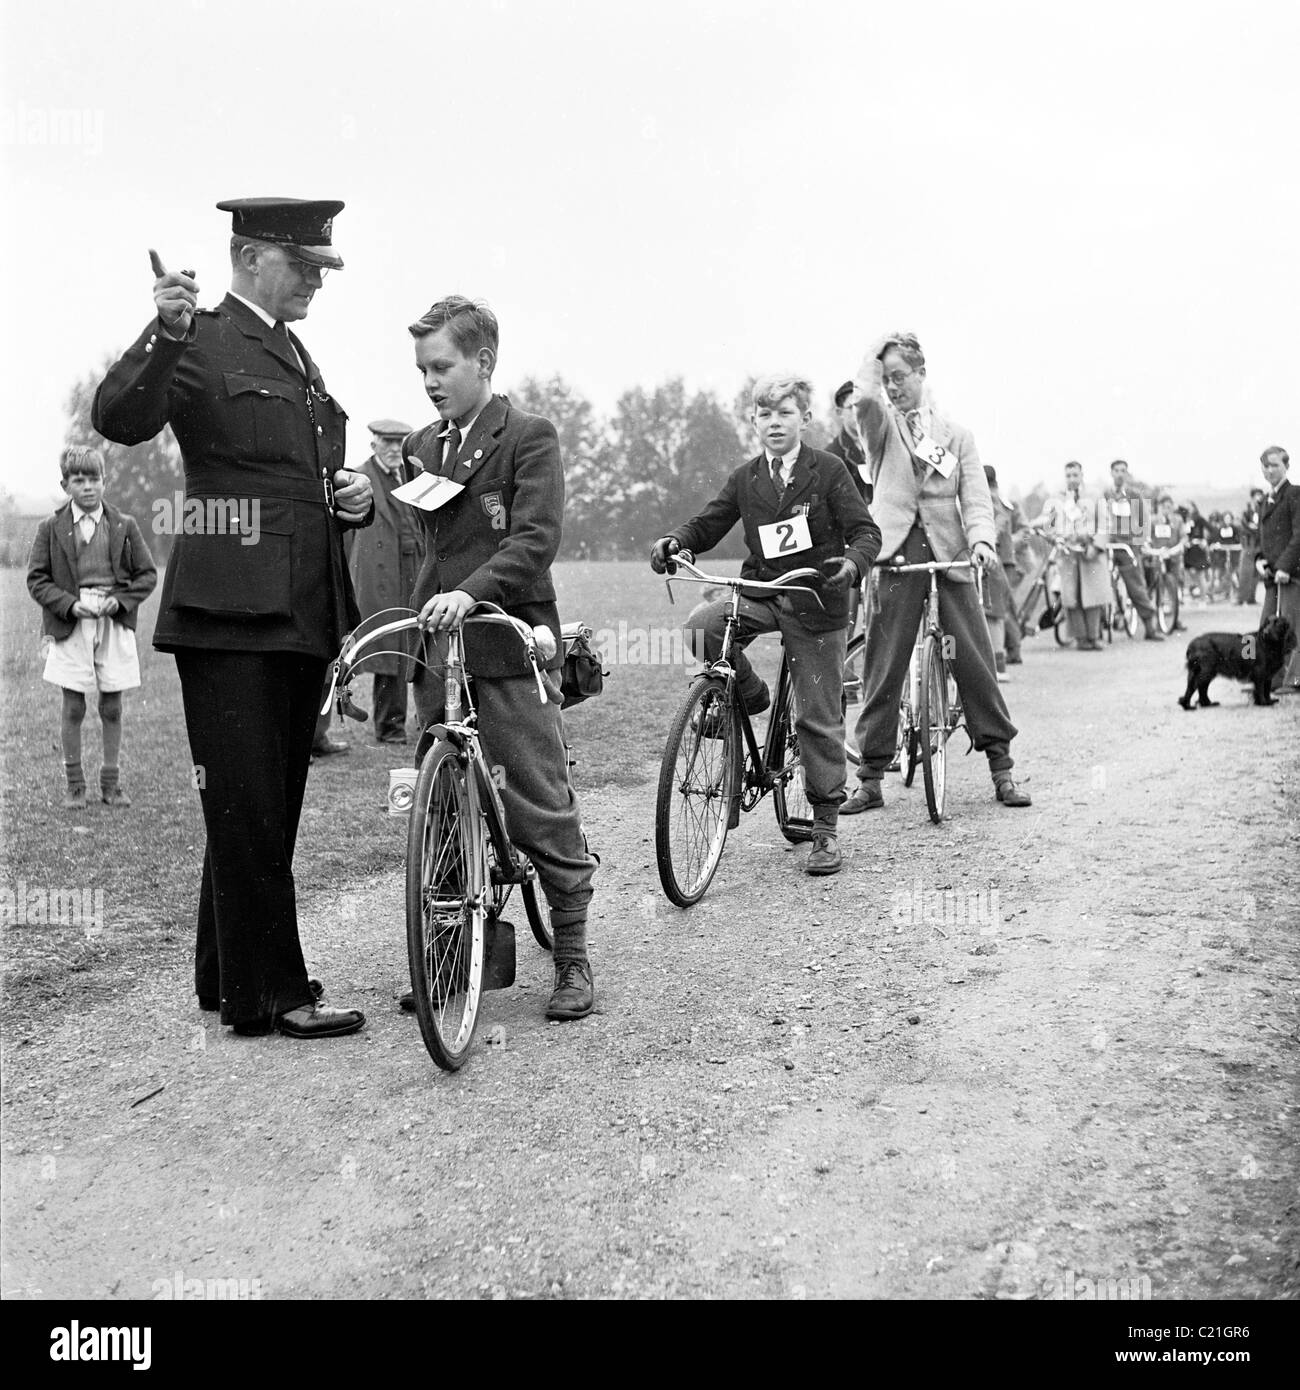 1950s, historique, à l'extérieur sur un chemin, un policier lance de jeunes écoliers à leur test de maîtrise du cyclisme, Londres, Angleterre, Royaume-Uni. Banque D'Images